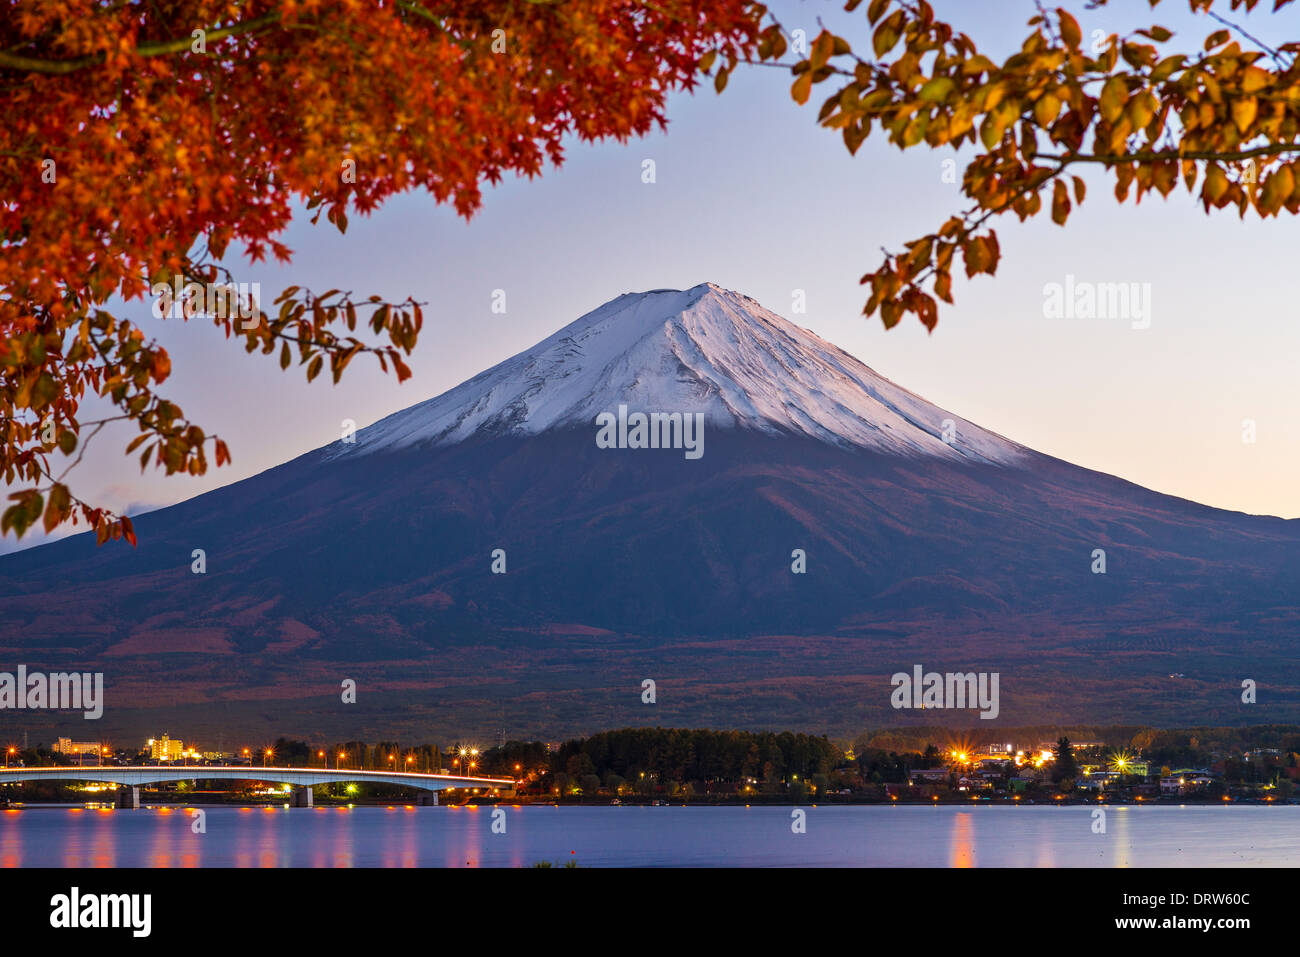 Mt Fuji in the Fall season. Stock Photo